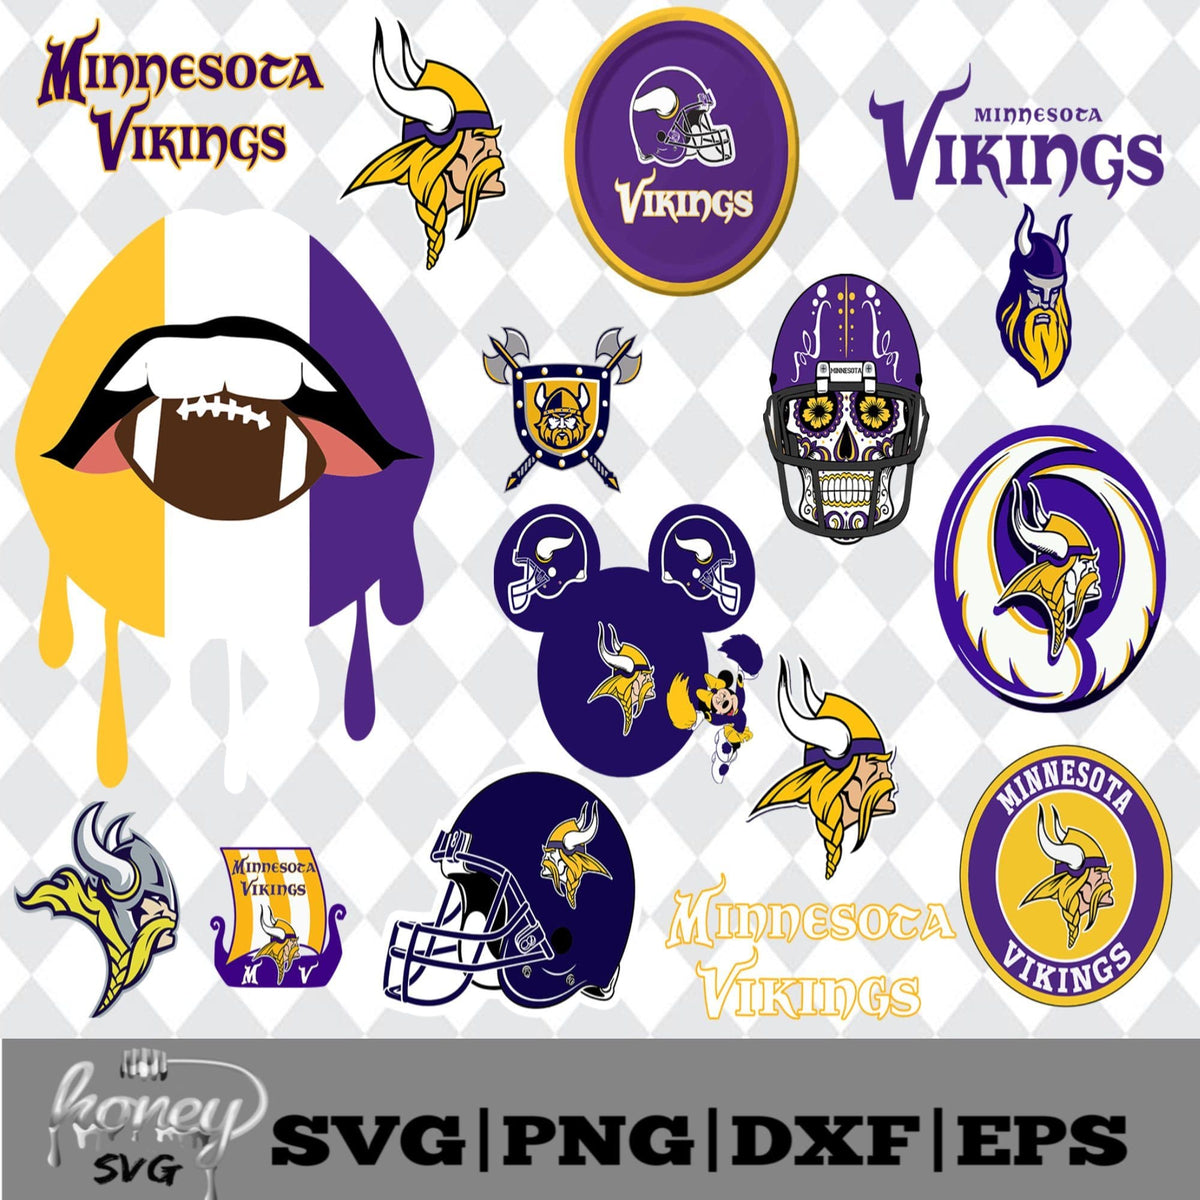 Download Minnesota Vikings NFL Svg, Eps, Dxf, Png - Honey SVG